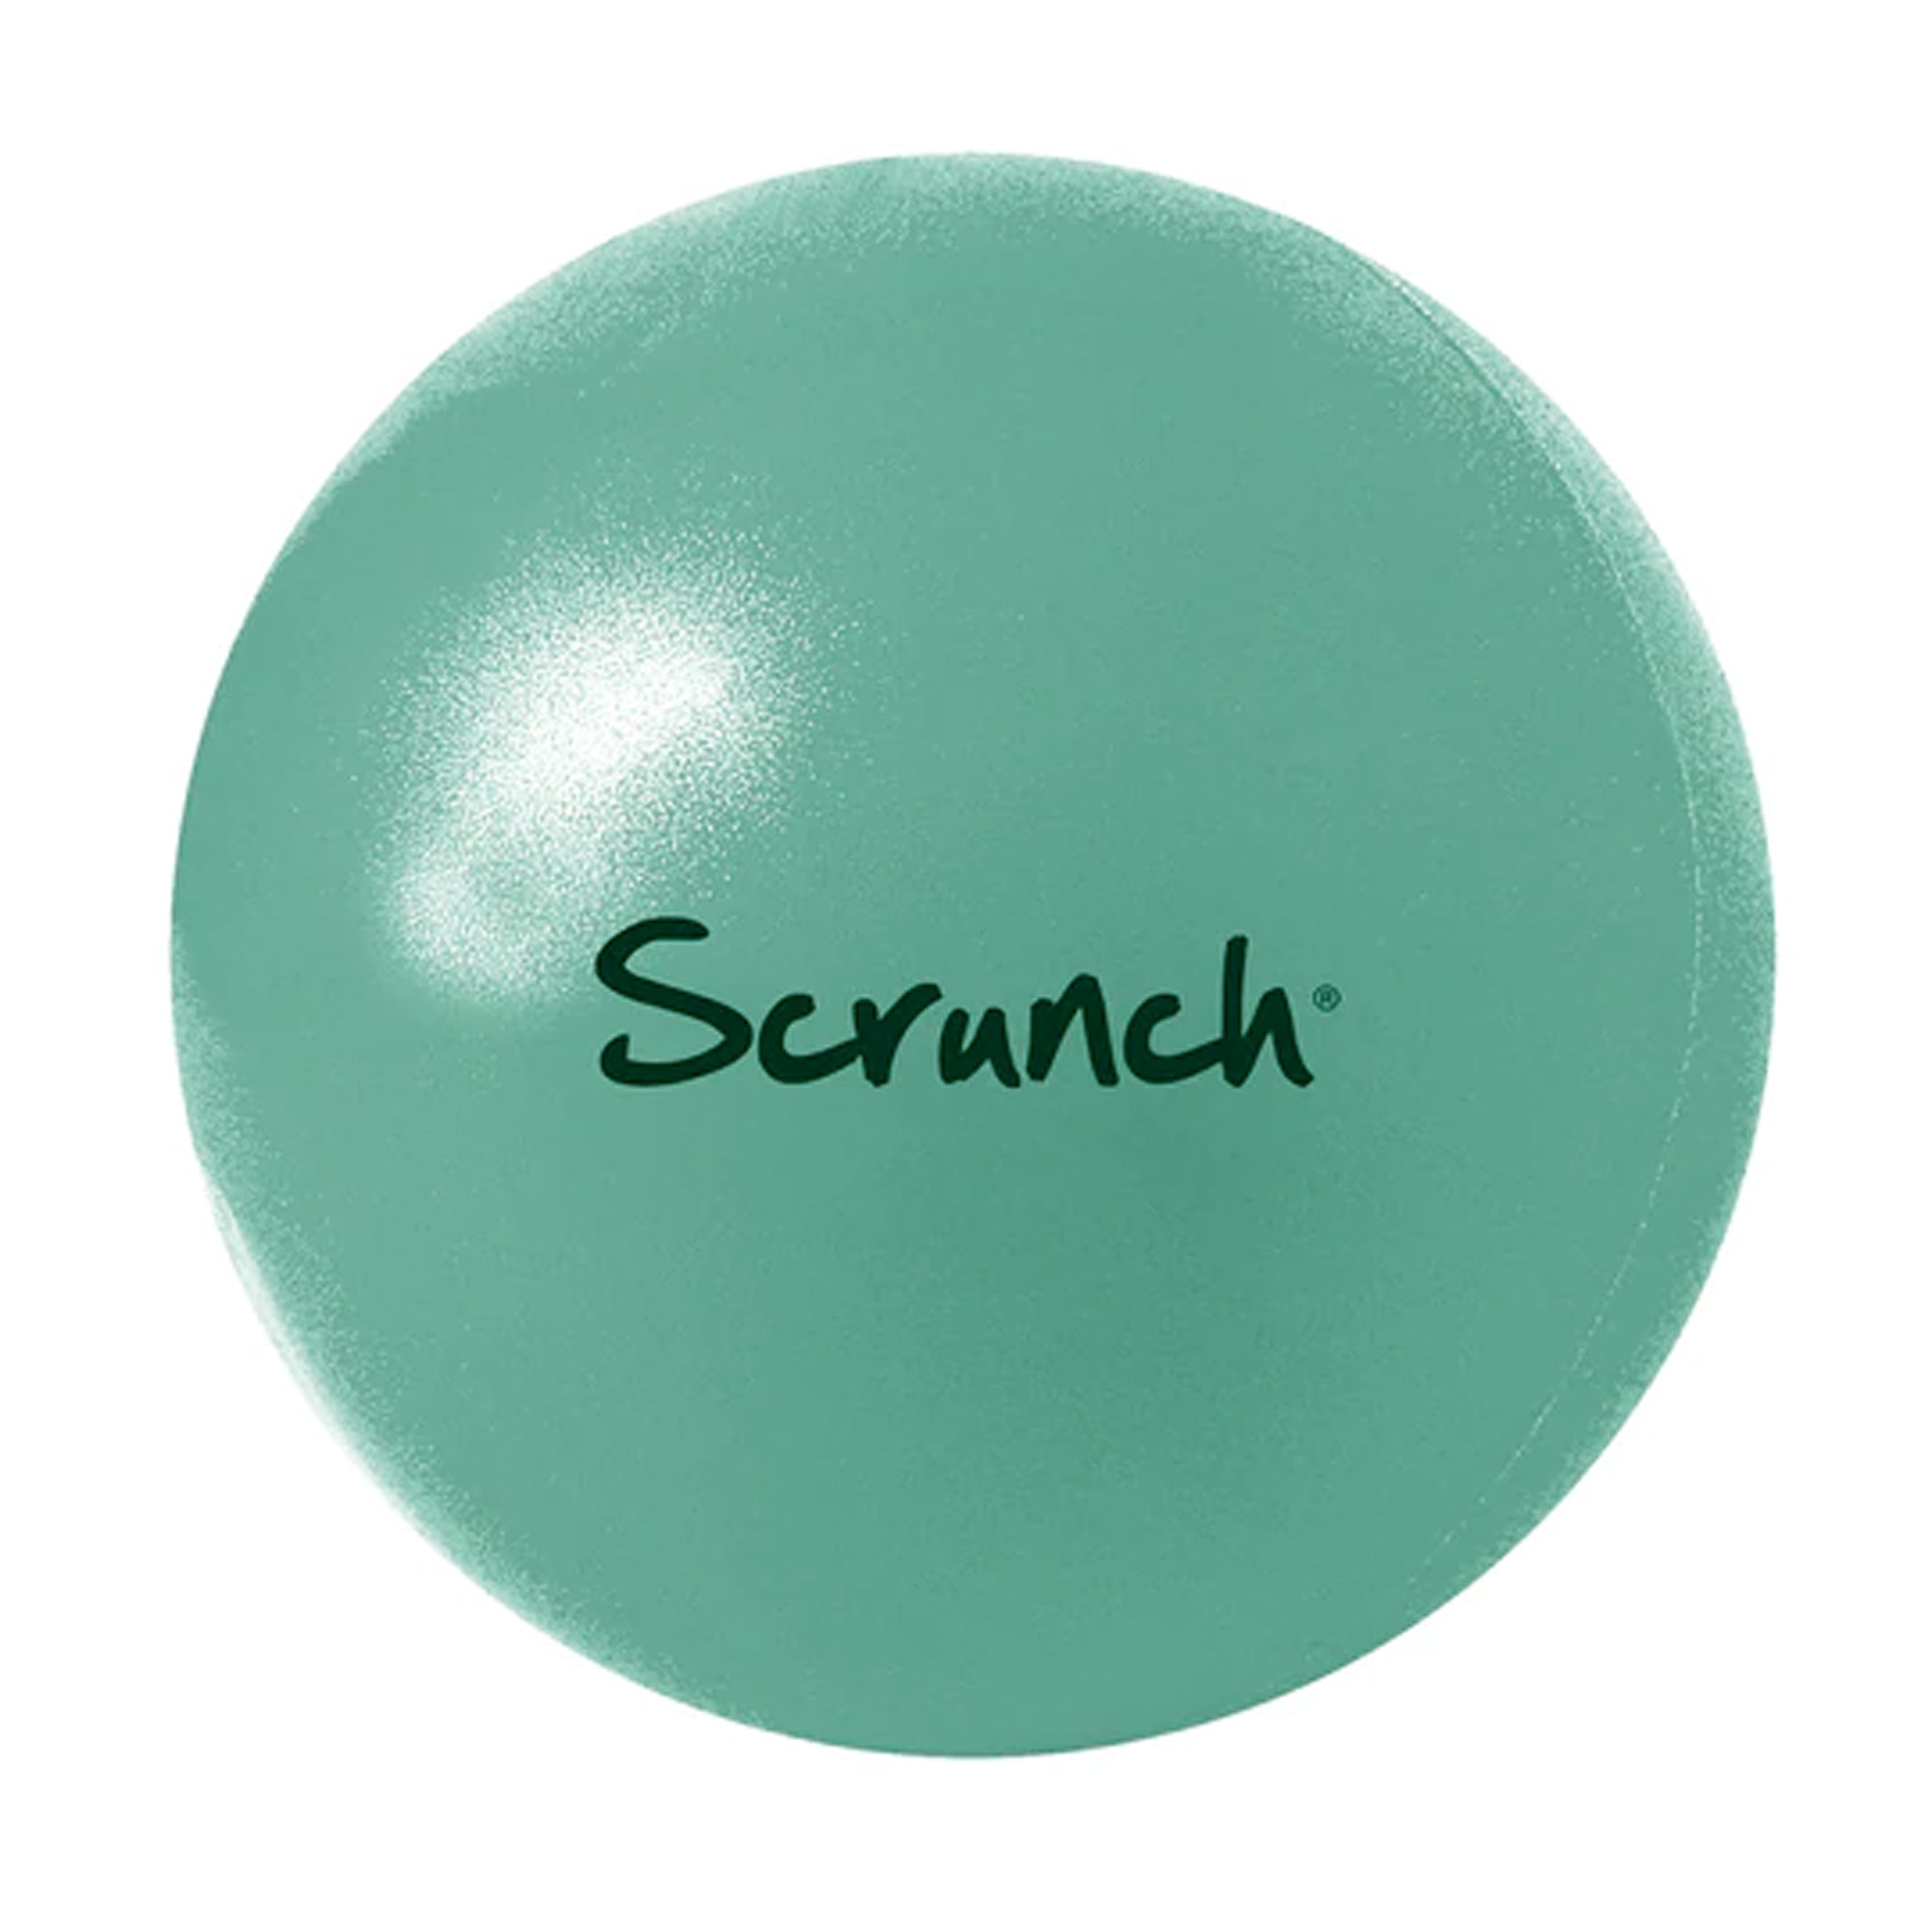 Scrunch Beach Ball